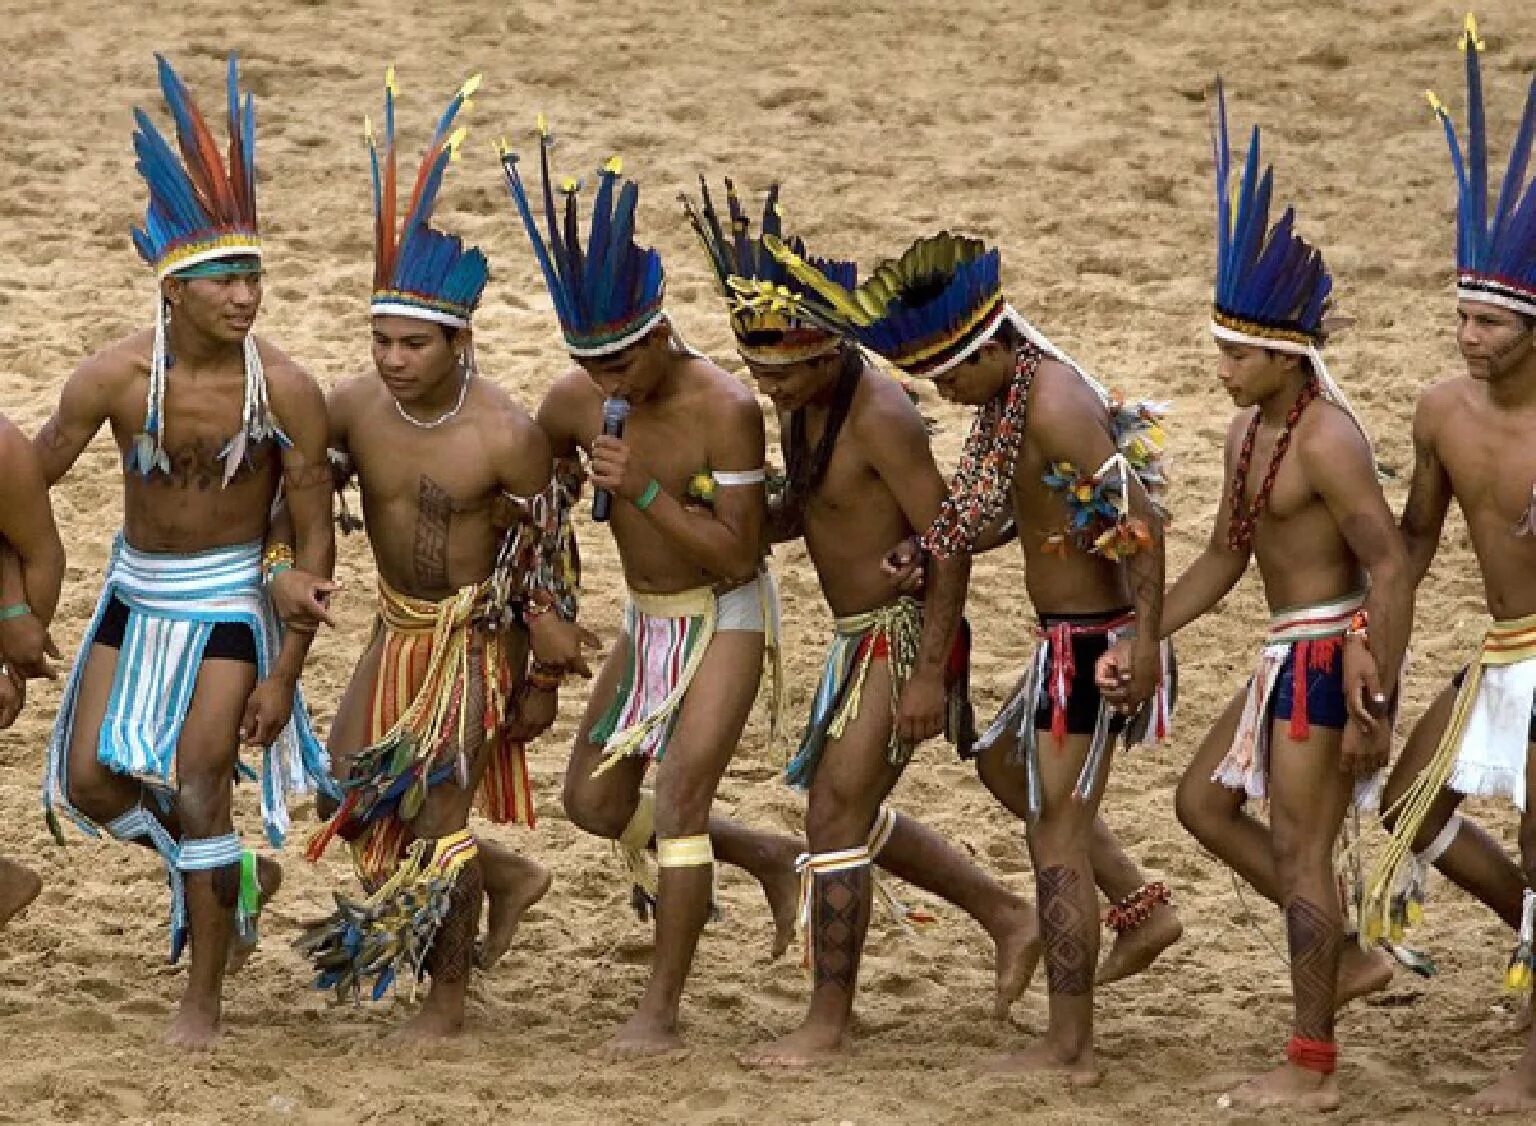 Tribe people. Коренные индейцы Южной Америки. Танцы индейцев Южной Америки. Индейцы Южной Африки. Индейцы аборигены.